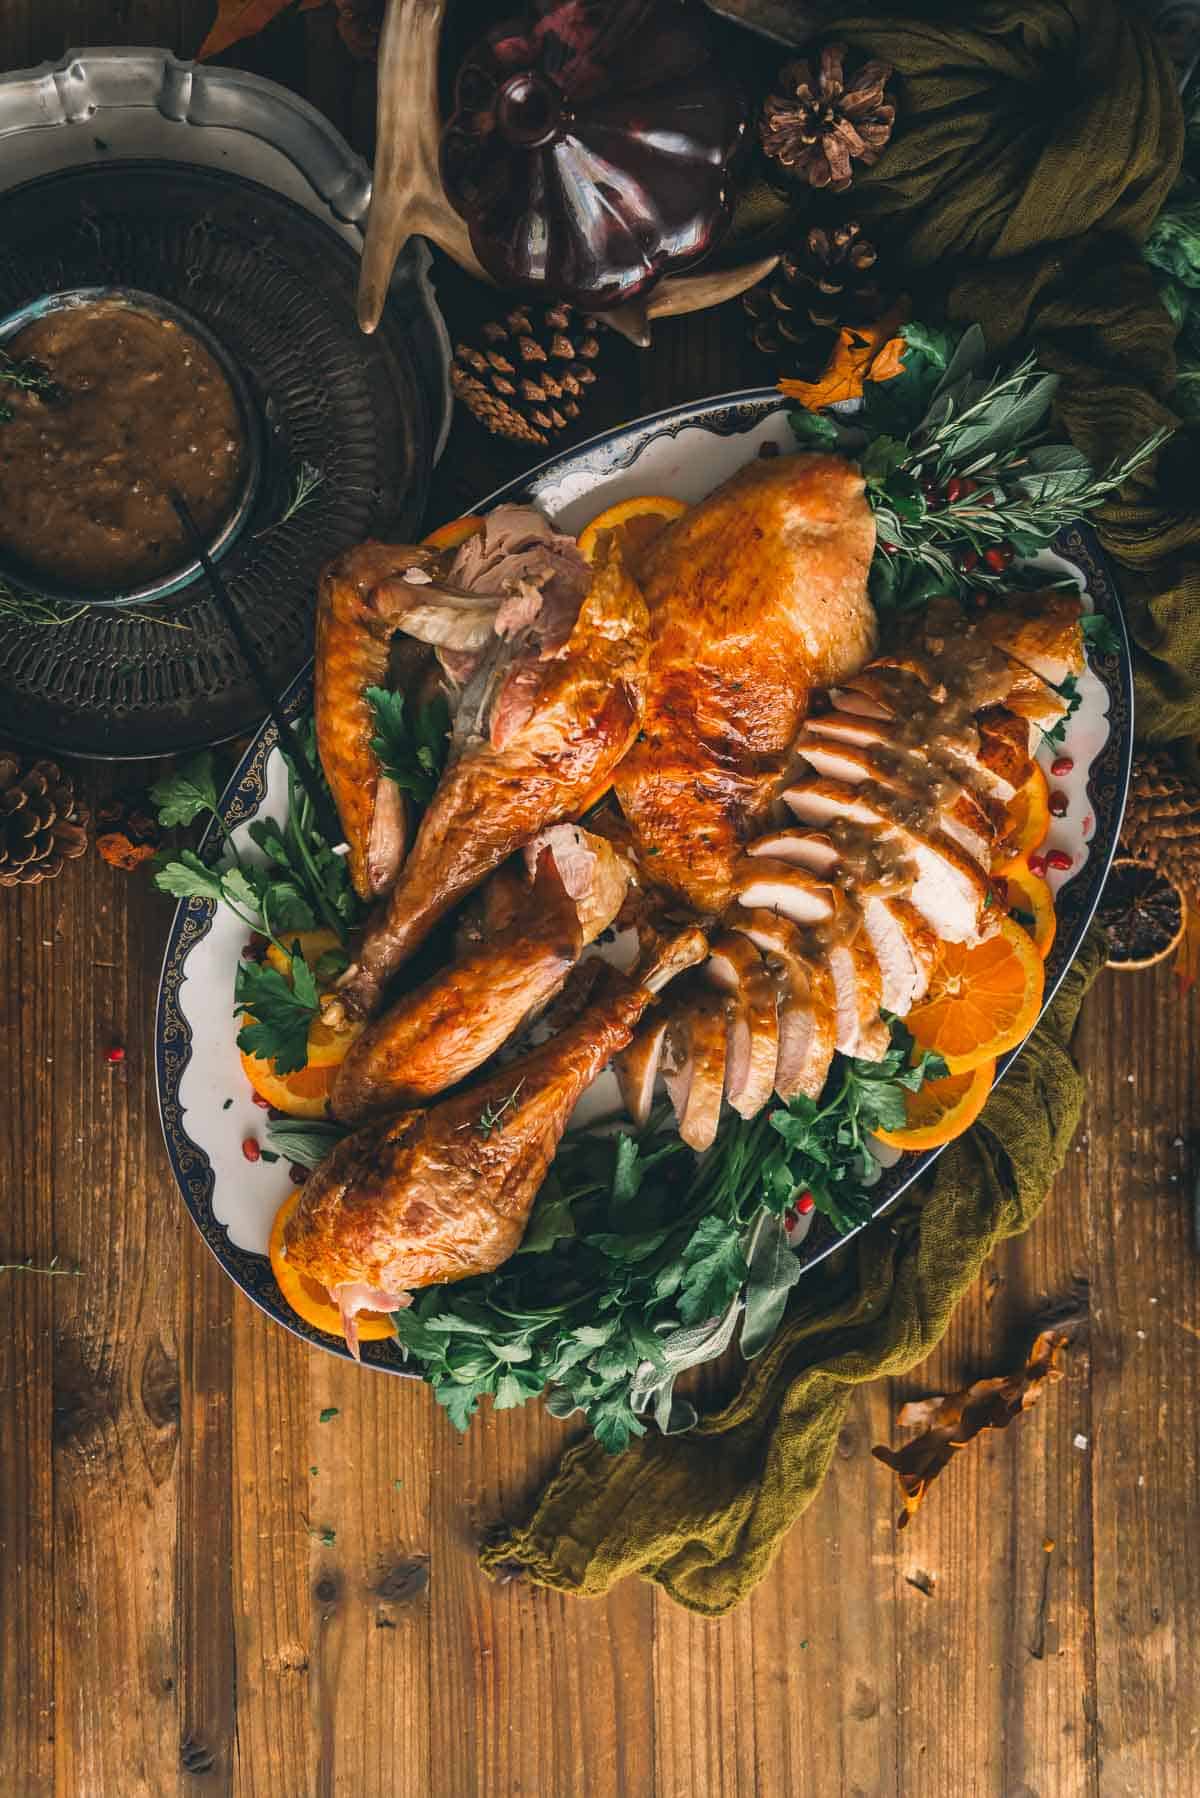 Carved turkey on platter.